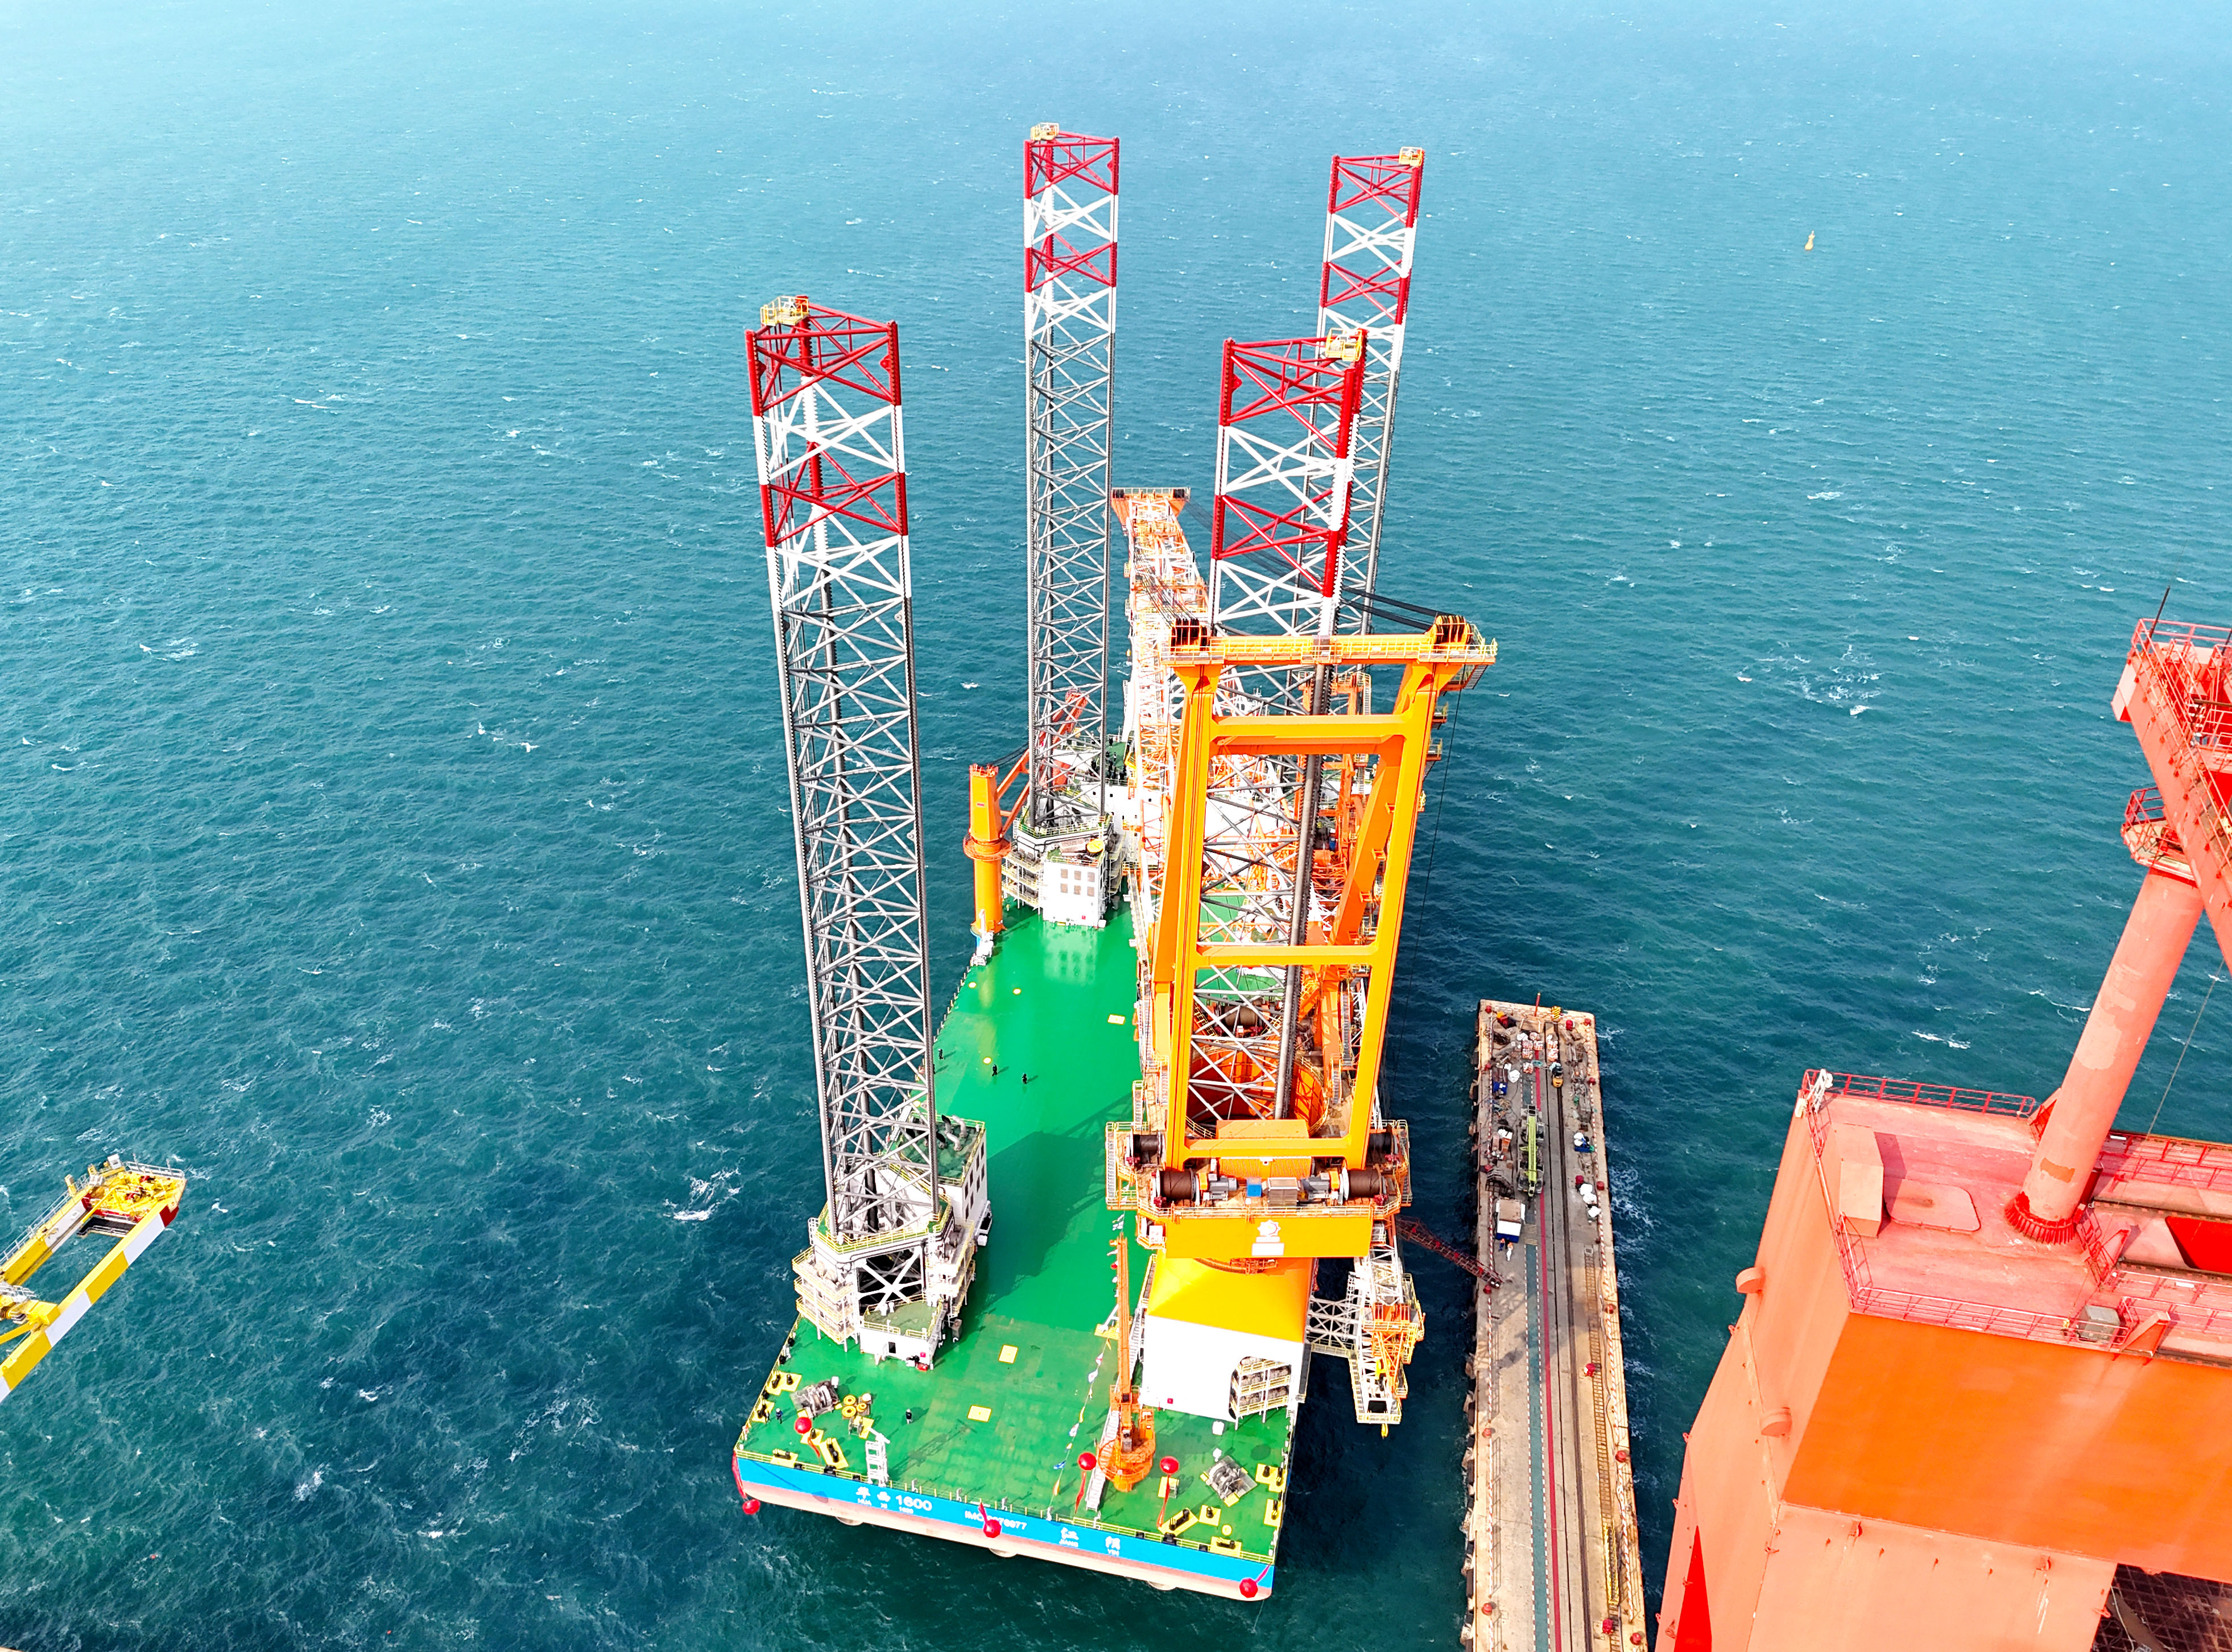 1600吨海上风电安装平台在青岛交付